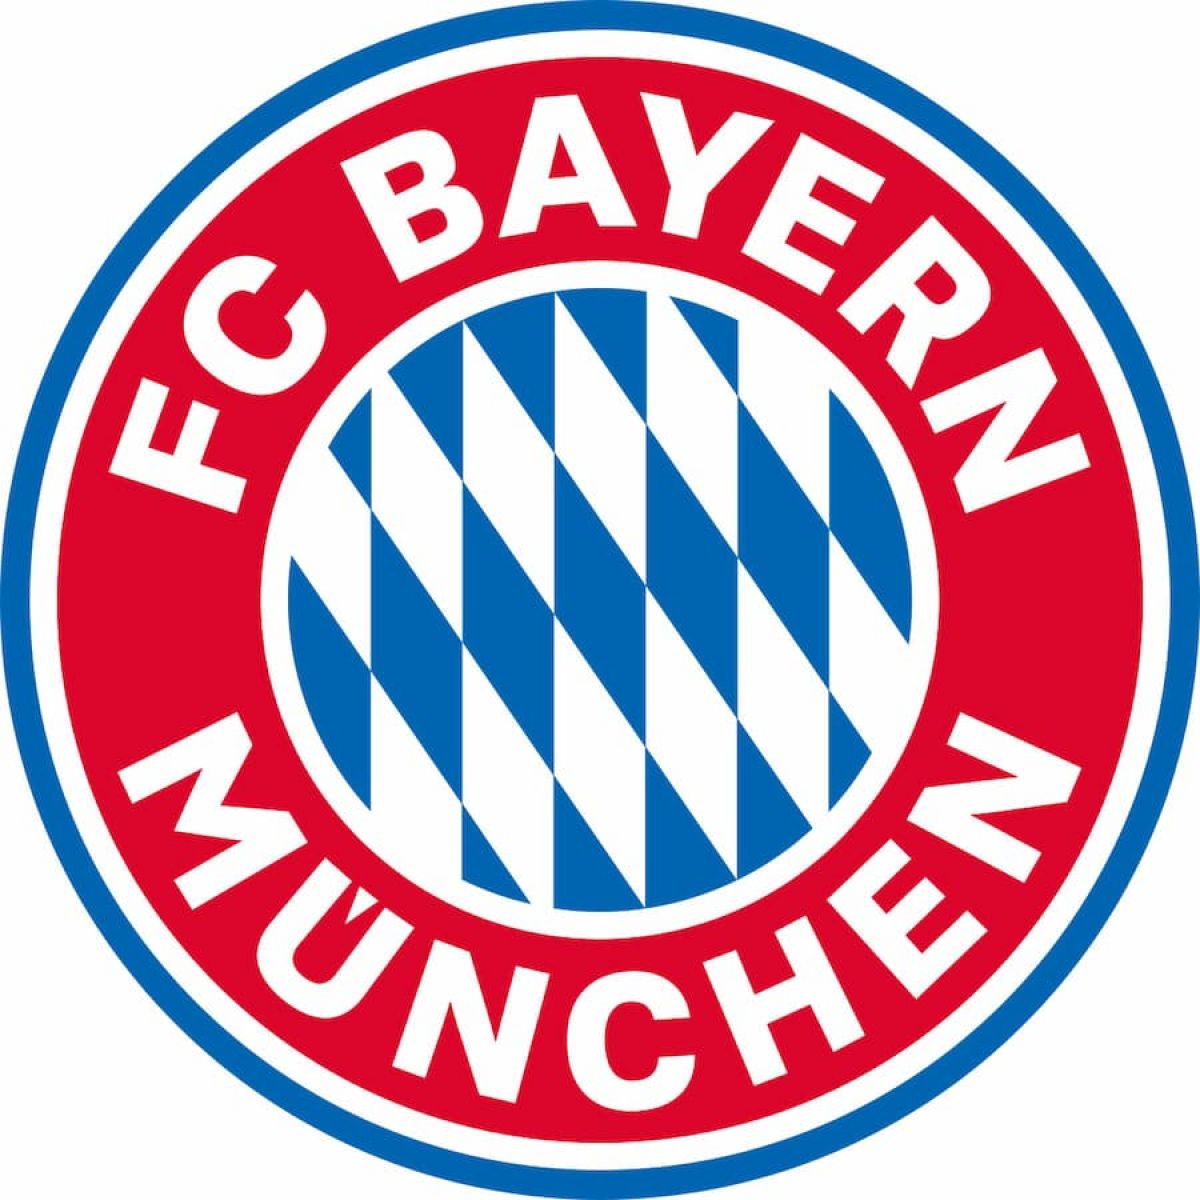 LOGO_FC_Bayern